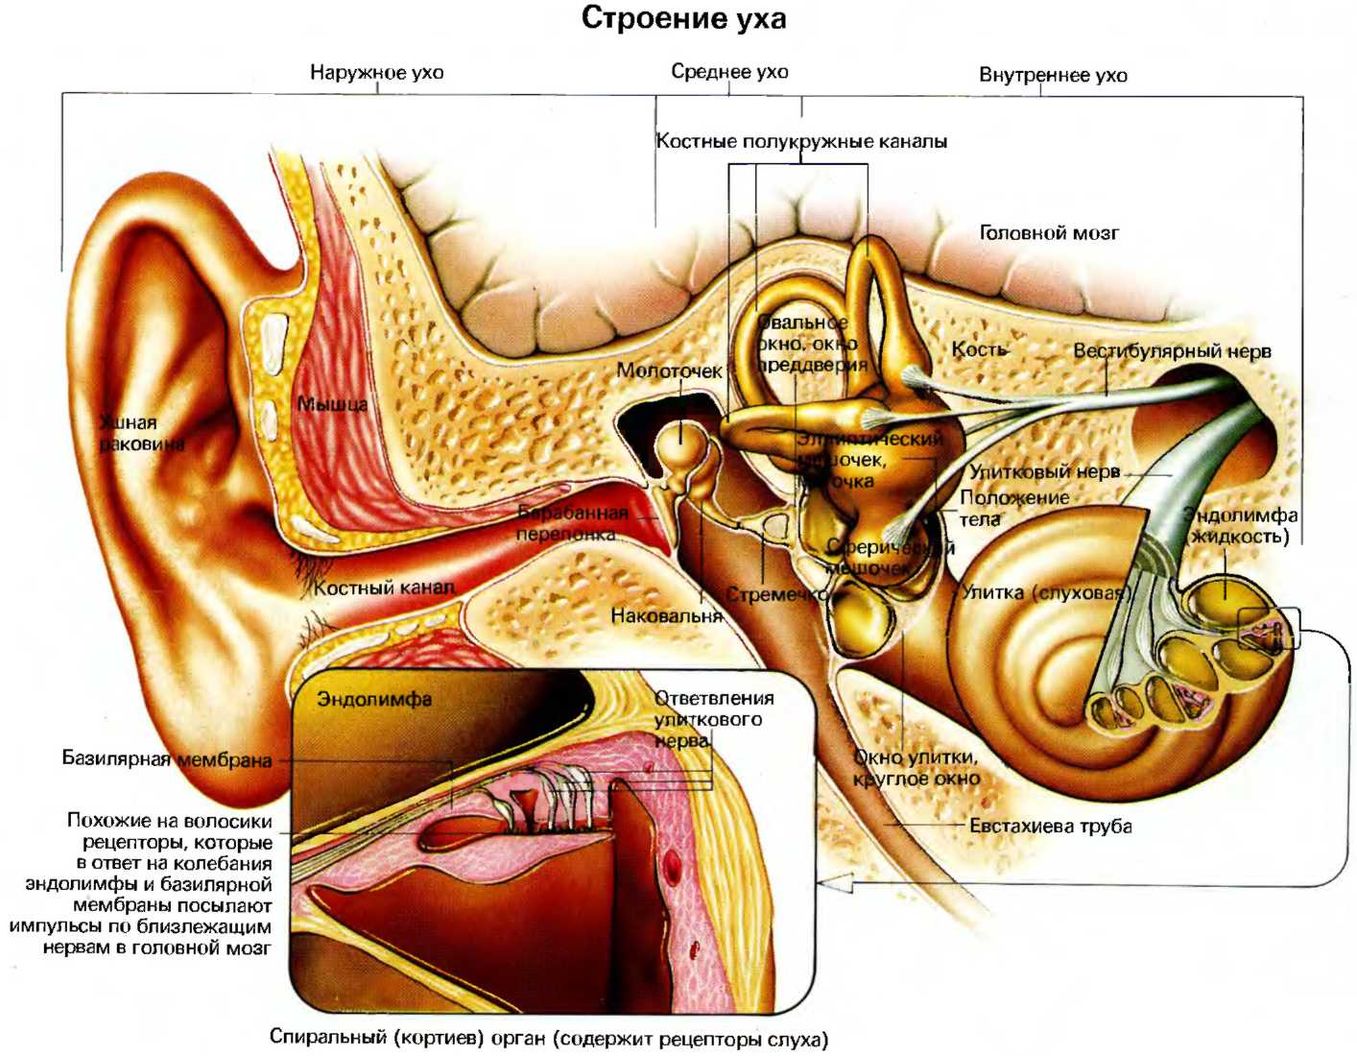 Схематическое строение внутреннего уха